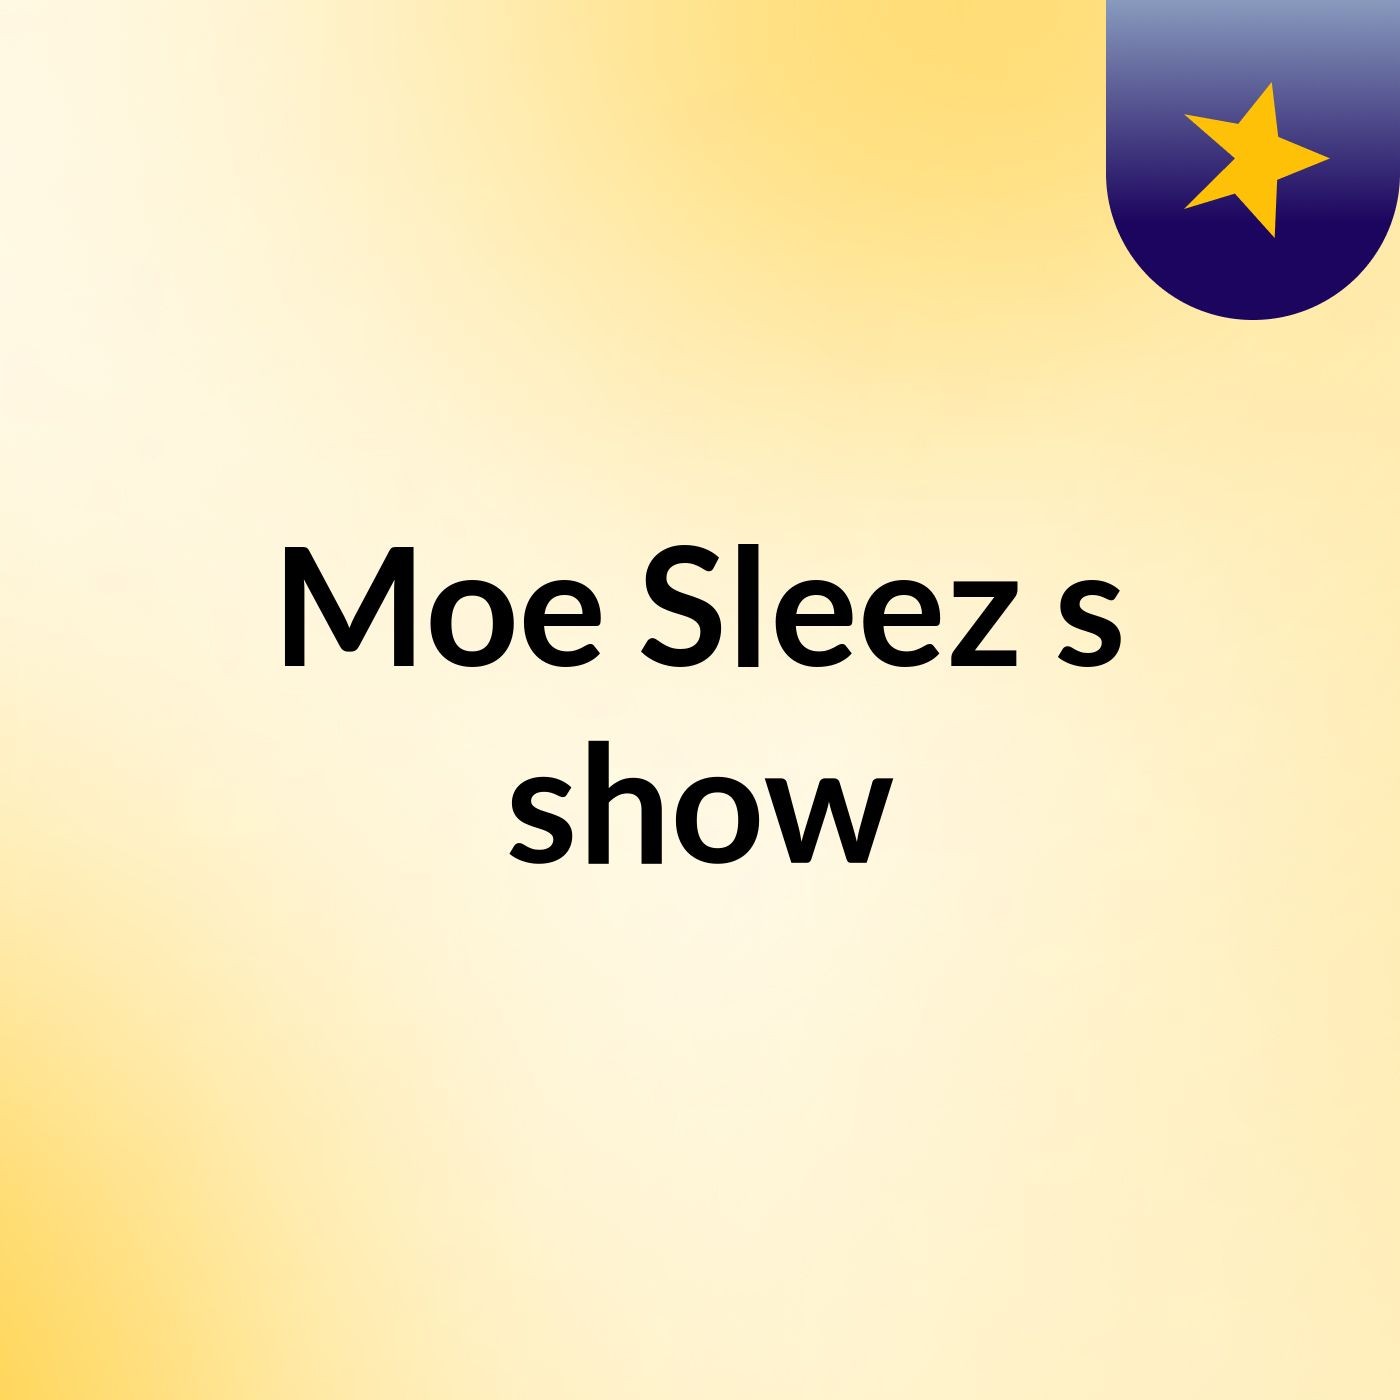 Moe Sleez's show